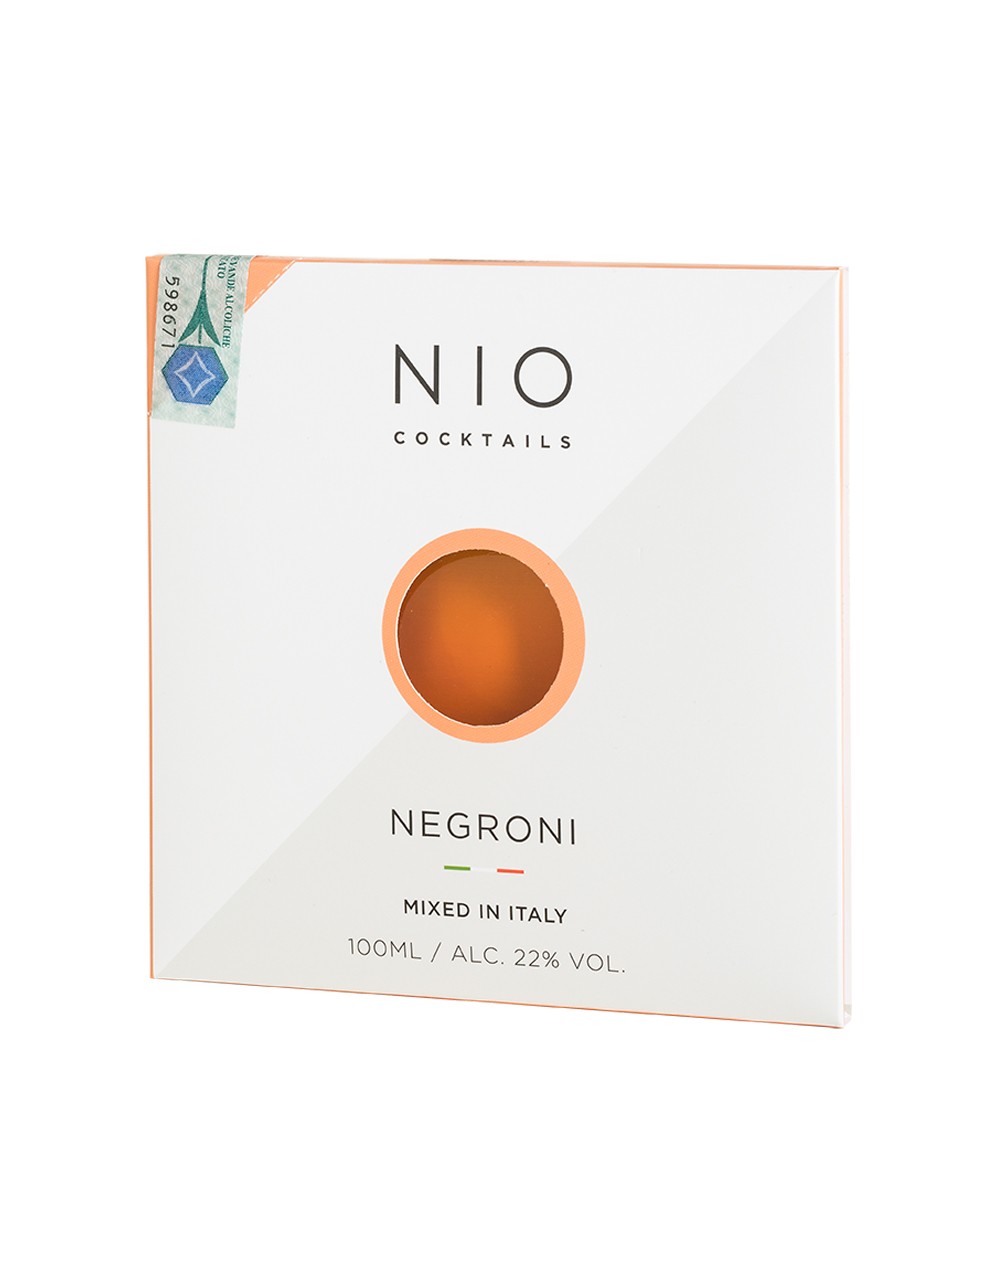 NIO COCKTAILS - Negroni